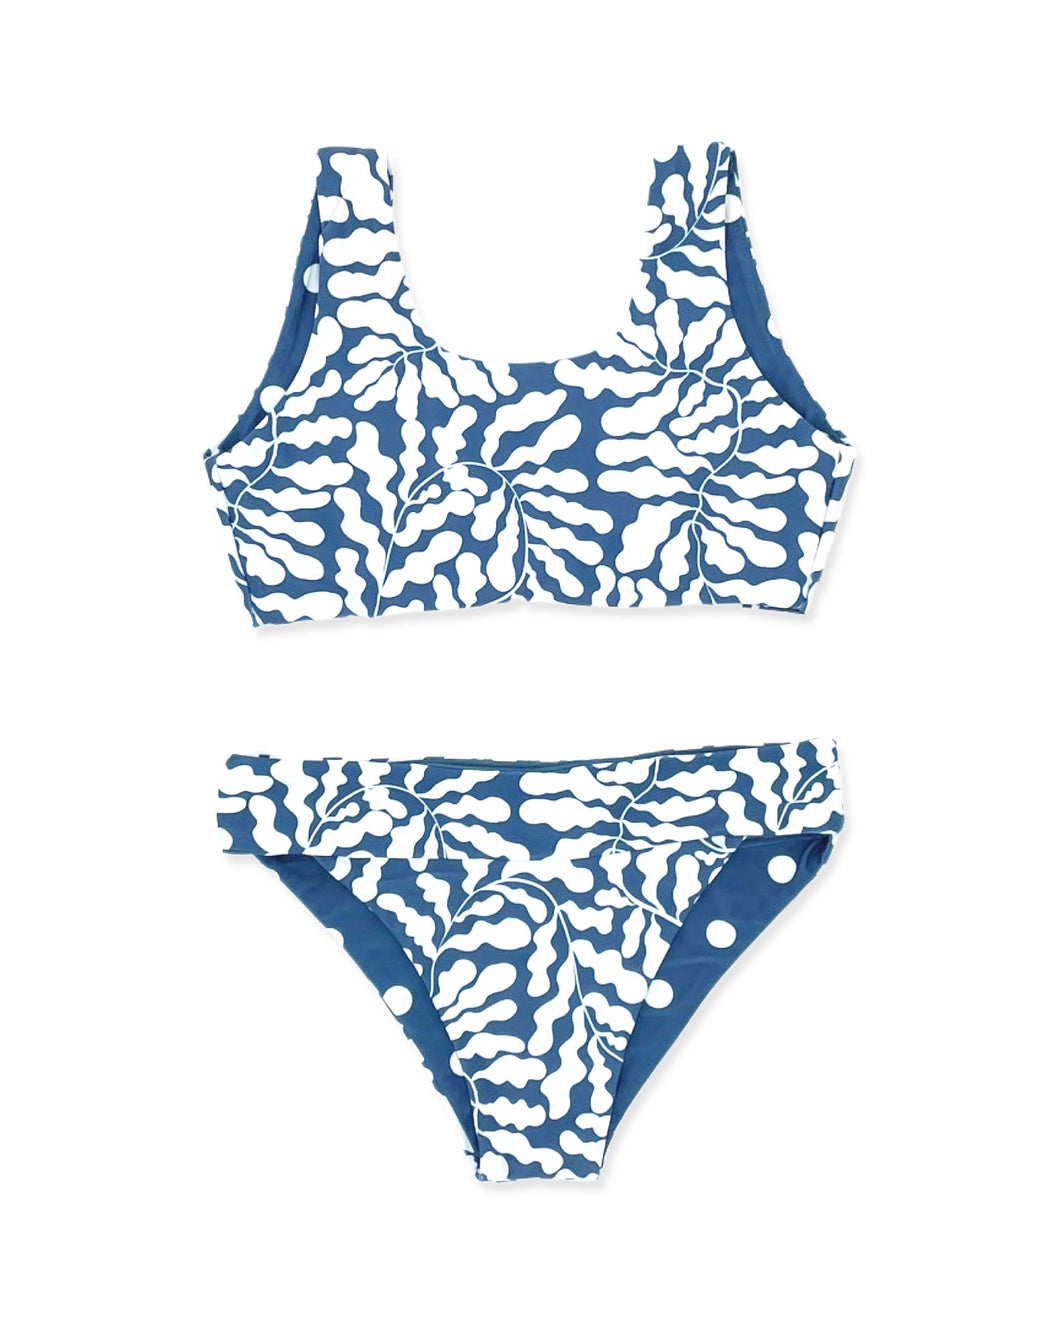 5 yrs - Island Hopper Bikini in Kelp- Navy